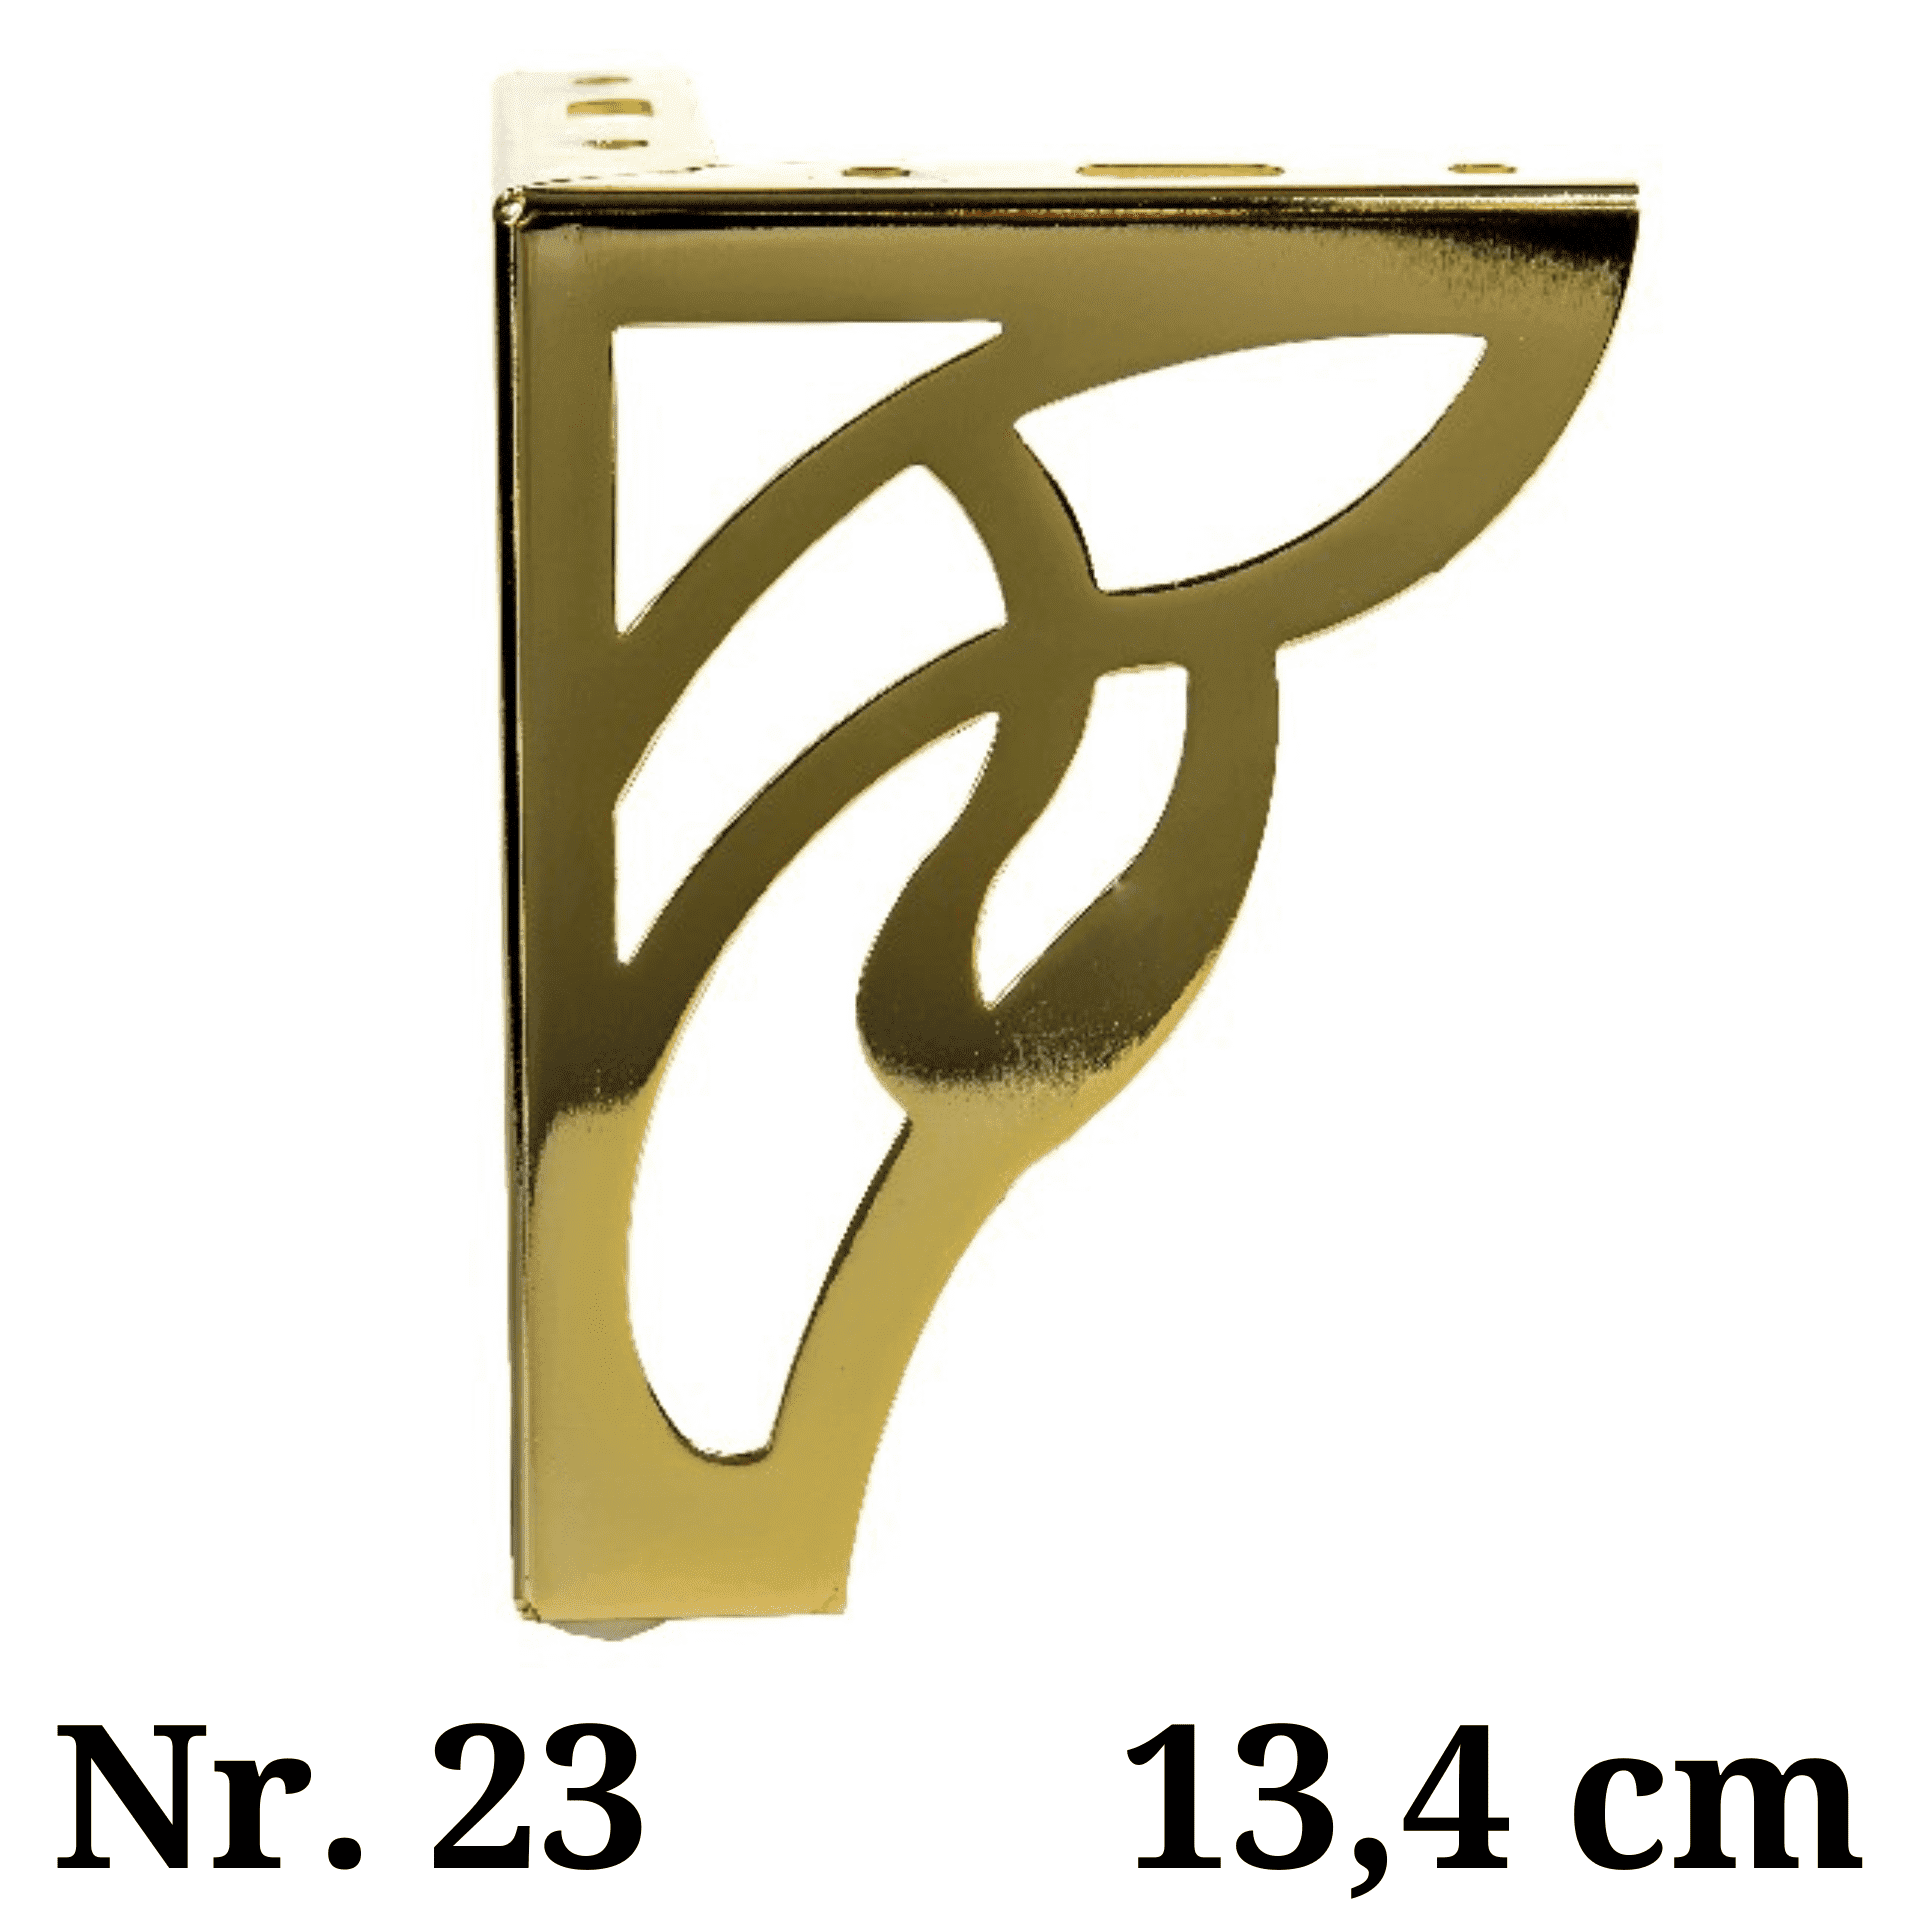 Metalinė kojelė Nr. 23 (40 €) 2 vnt.